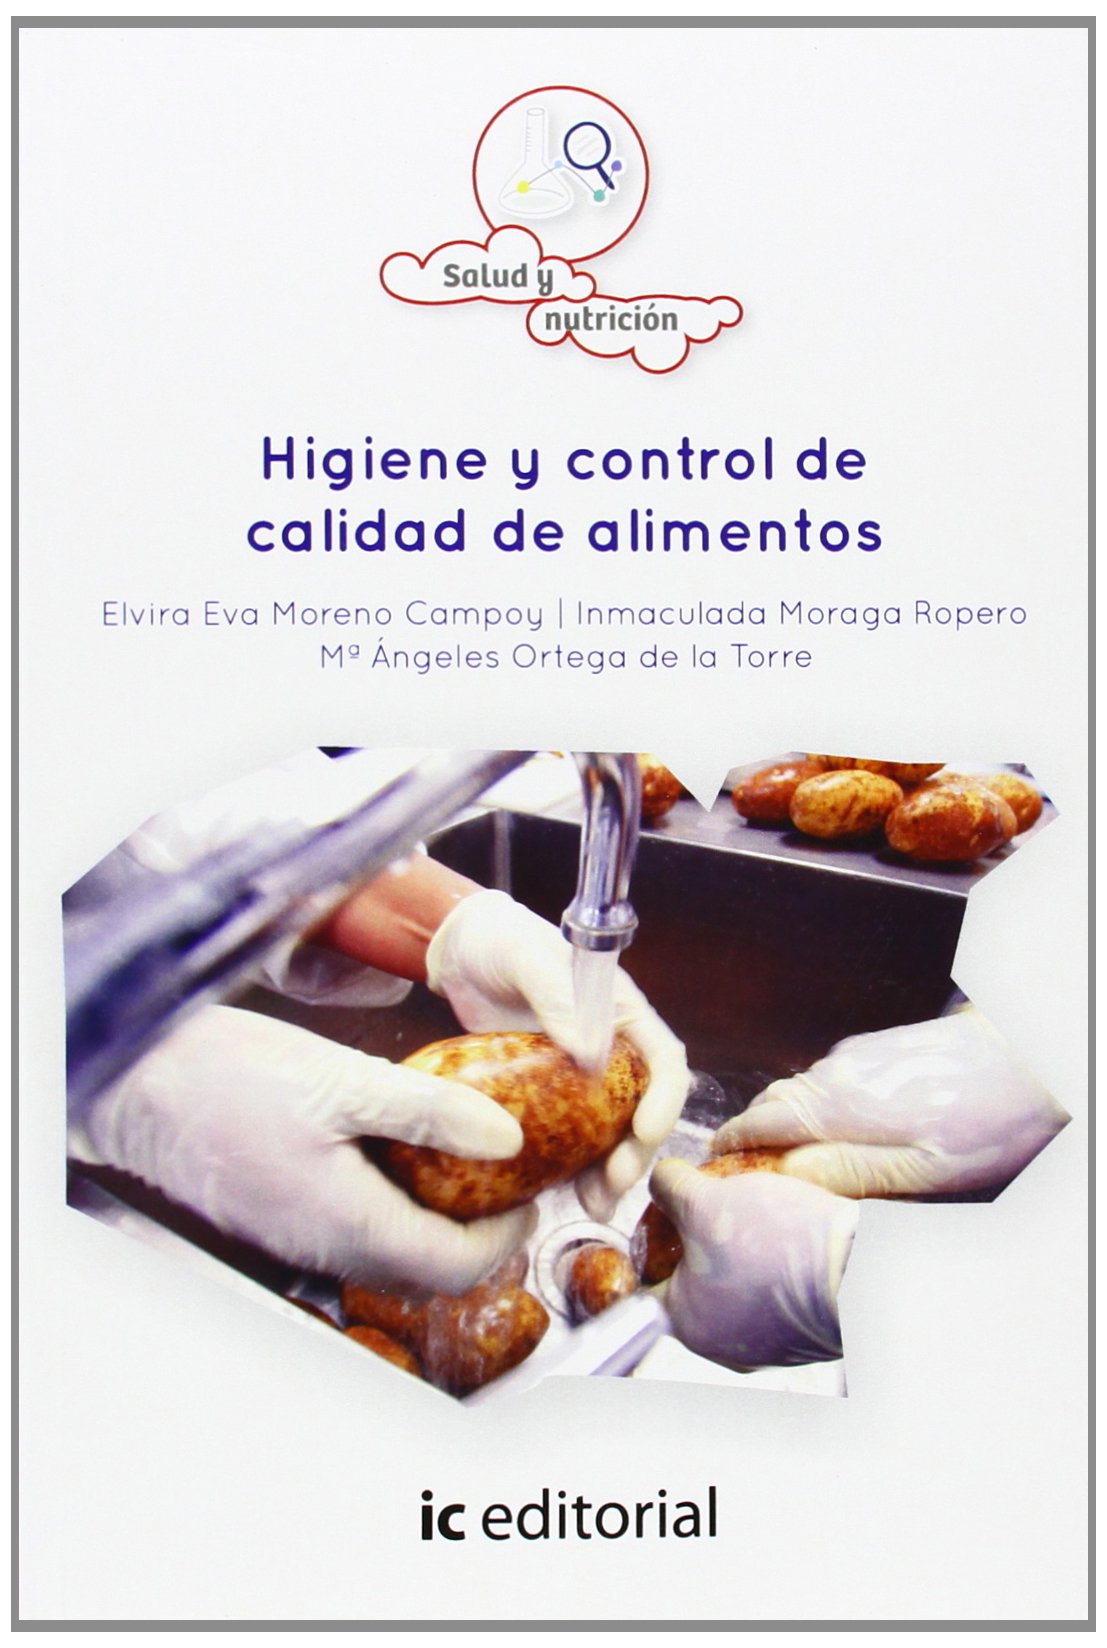 Imagen de portada del libro Higiene y control de calidad de alimentos